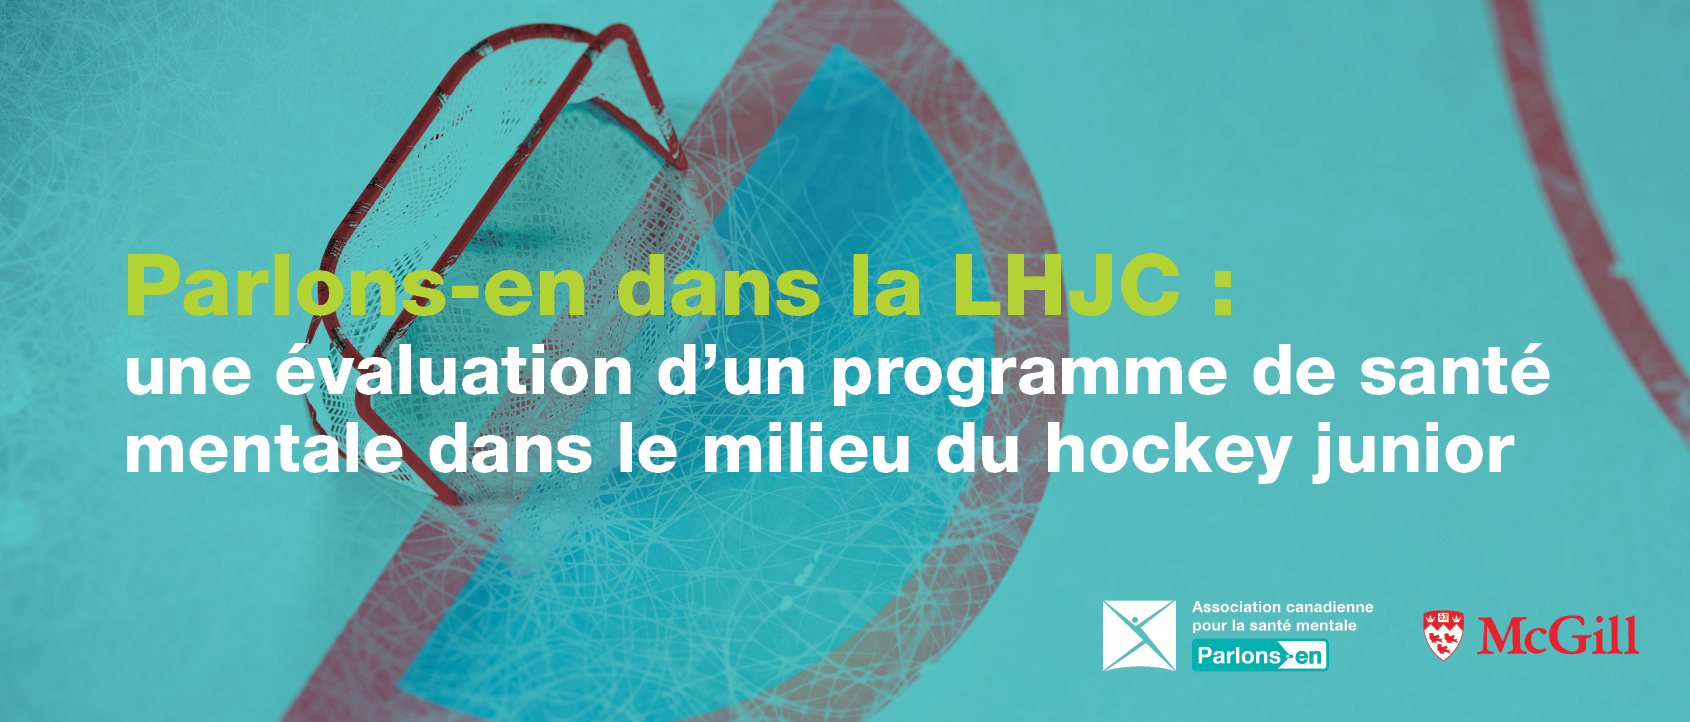 Une étude de l’Université McGill souligne les retombées d’un programme de santé mentale dans la Ligue de hockey junior canadienne